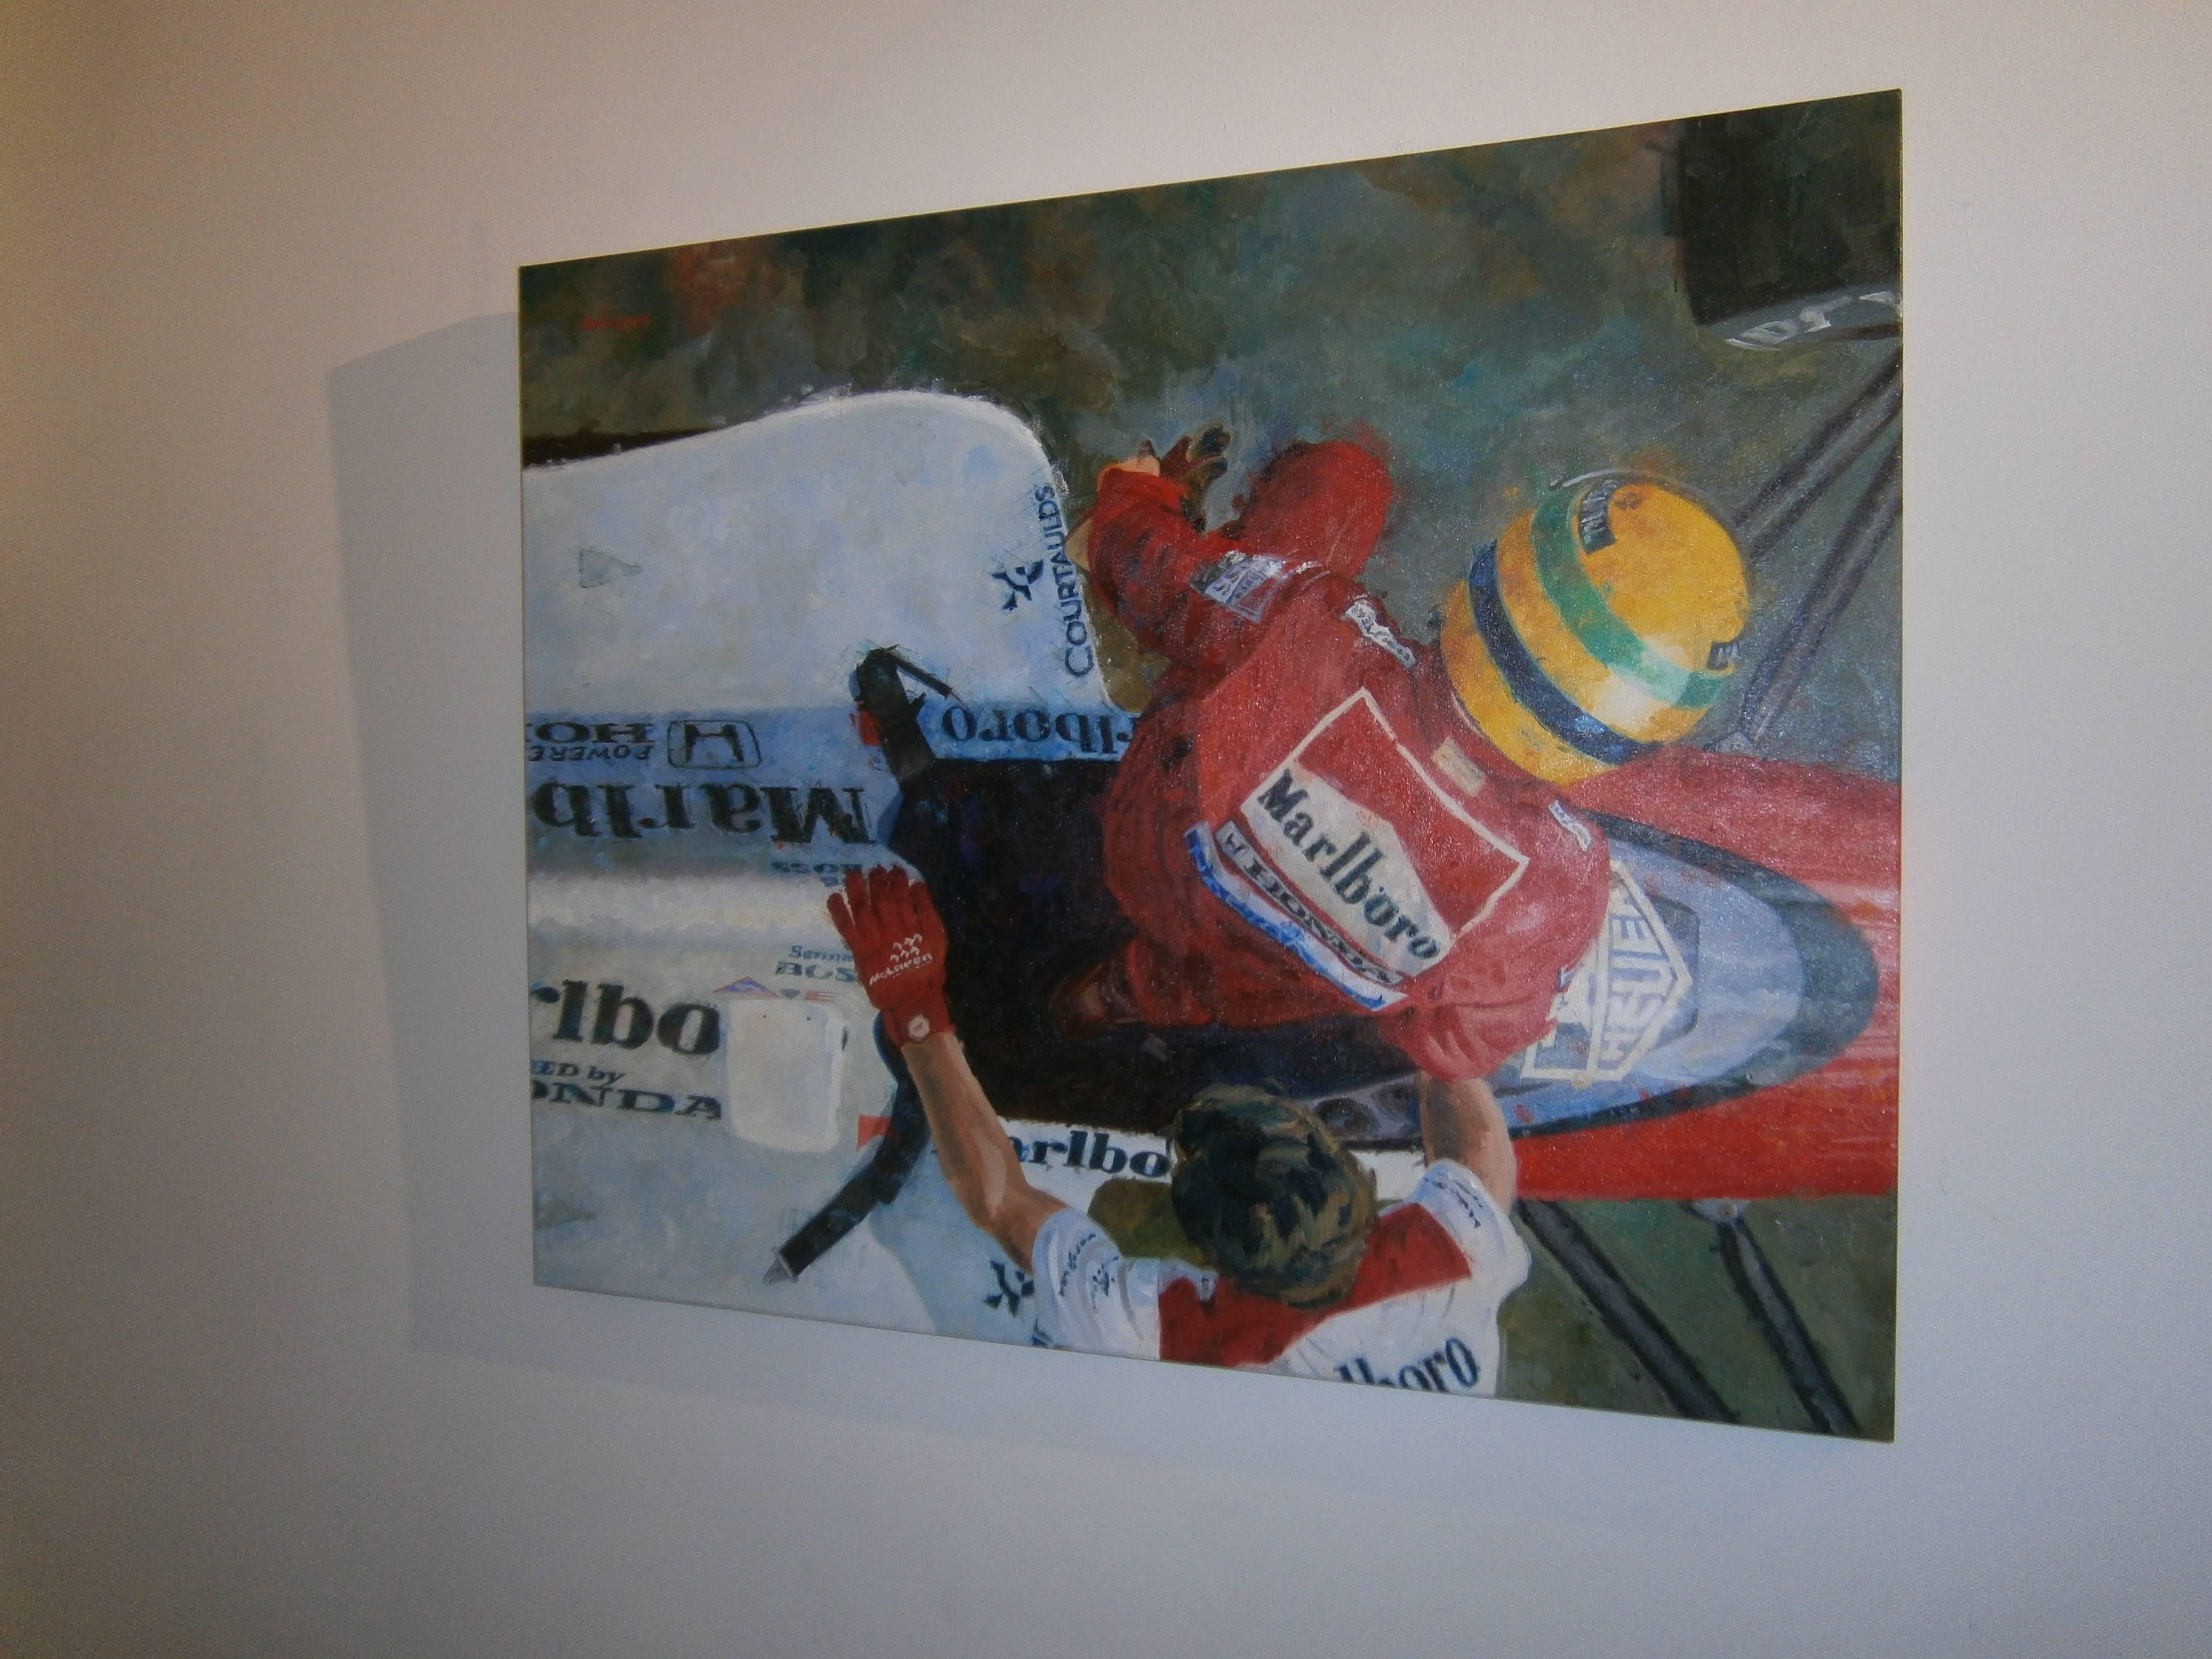 Balaguer  Car Races Senna 1989. Car original figurative acrylic painting - Painting by Alex BALAGUER